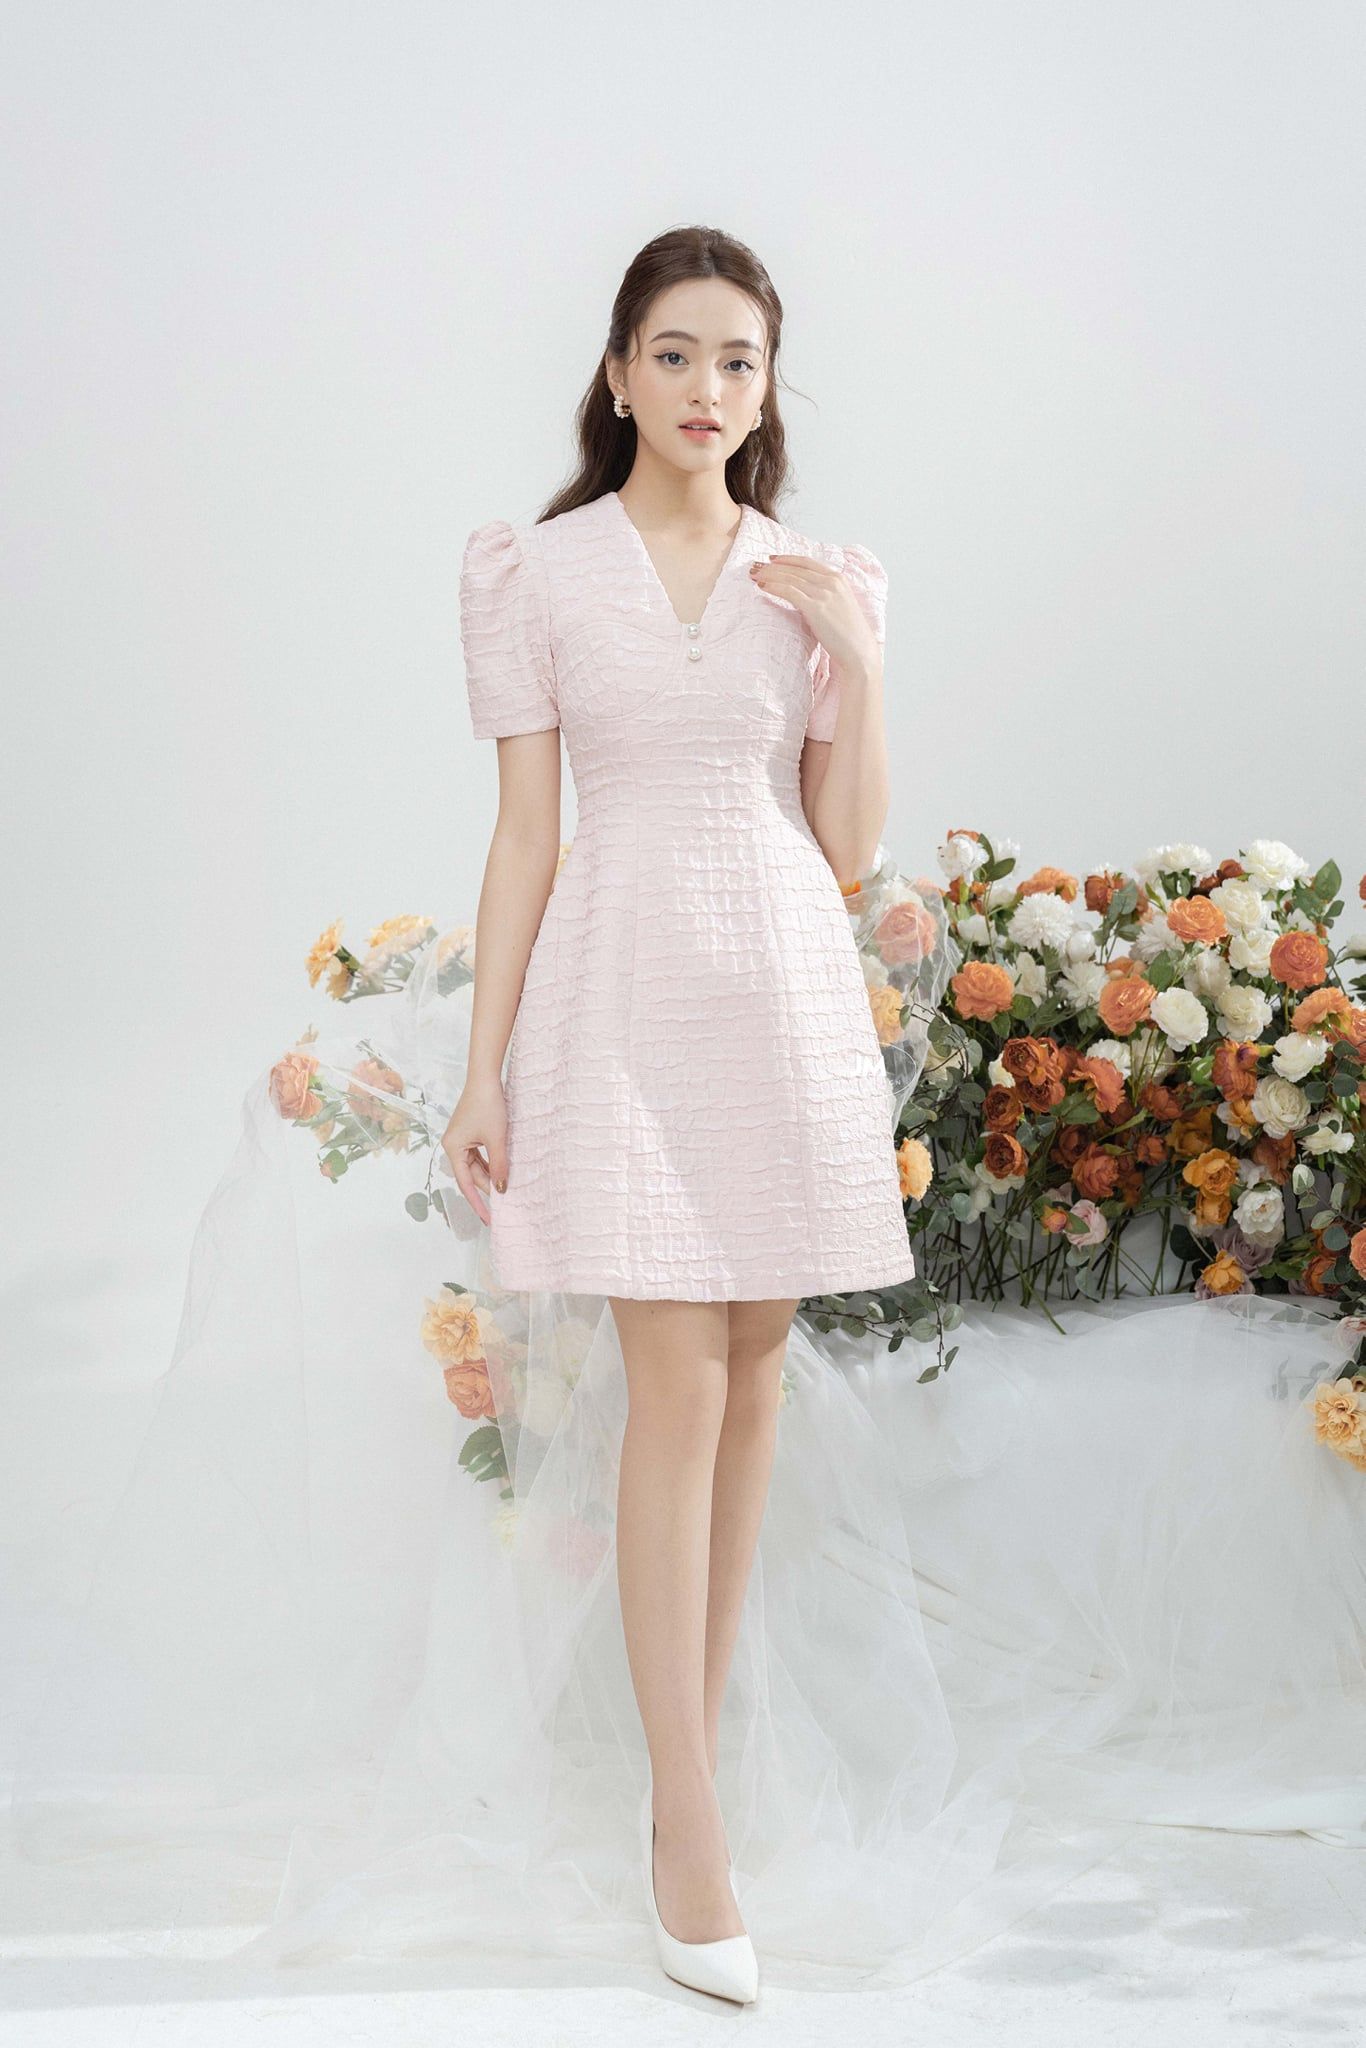 50+ mẫu váy công sở ĐẸP & cách mix đồ thời trang cho quý cô văn phòng